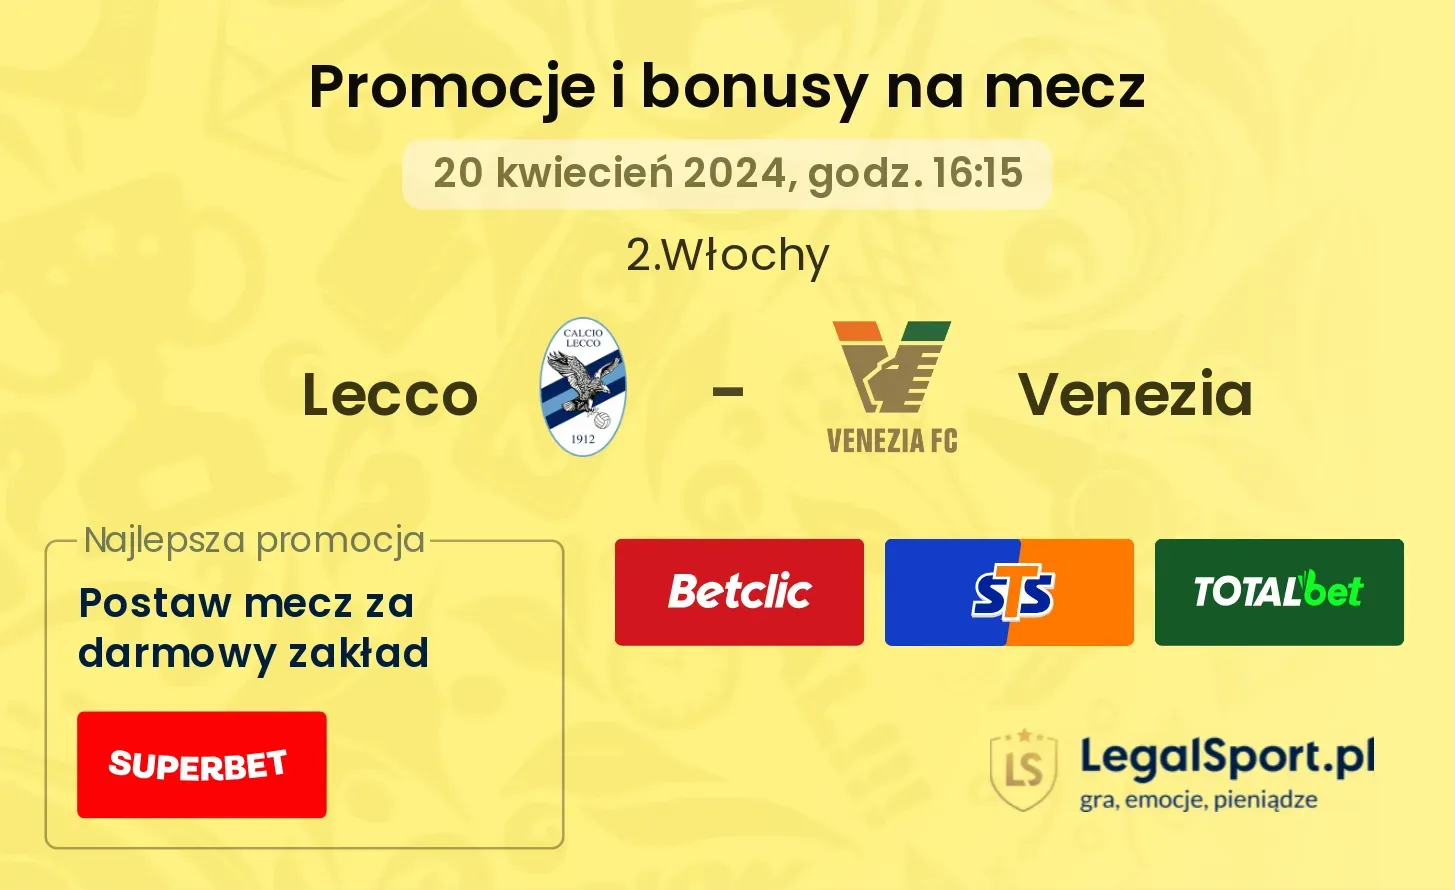 Lecco - Venezia promocje bonusy na mecz